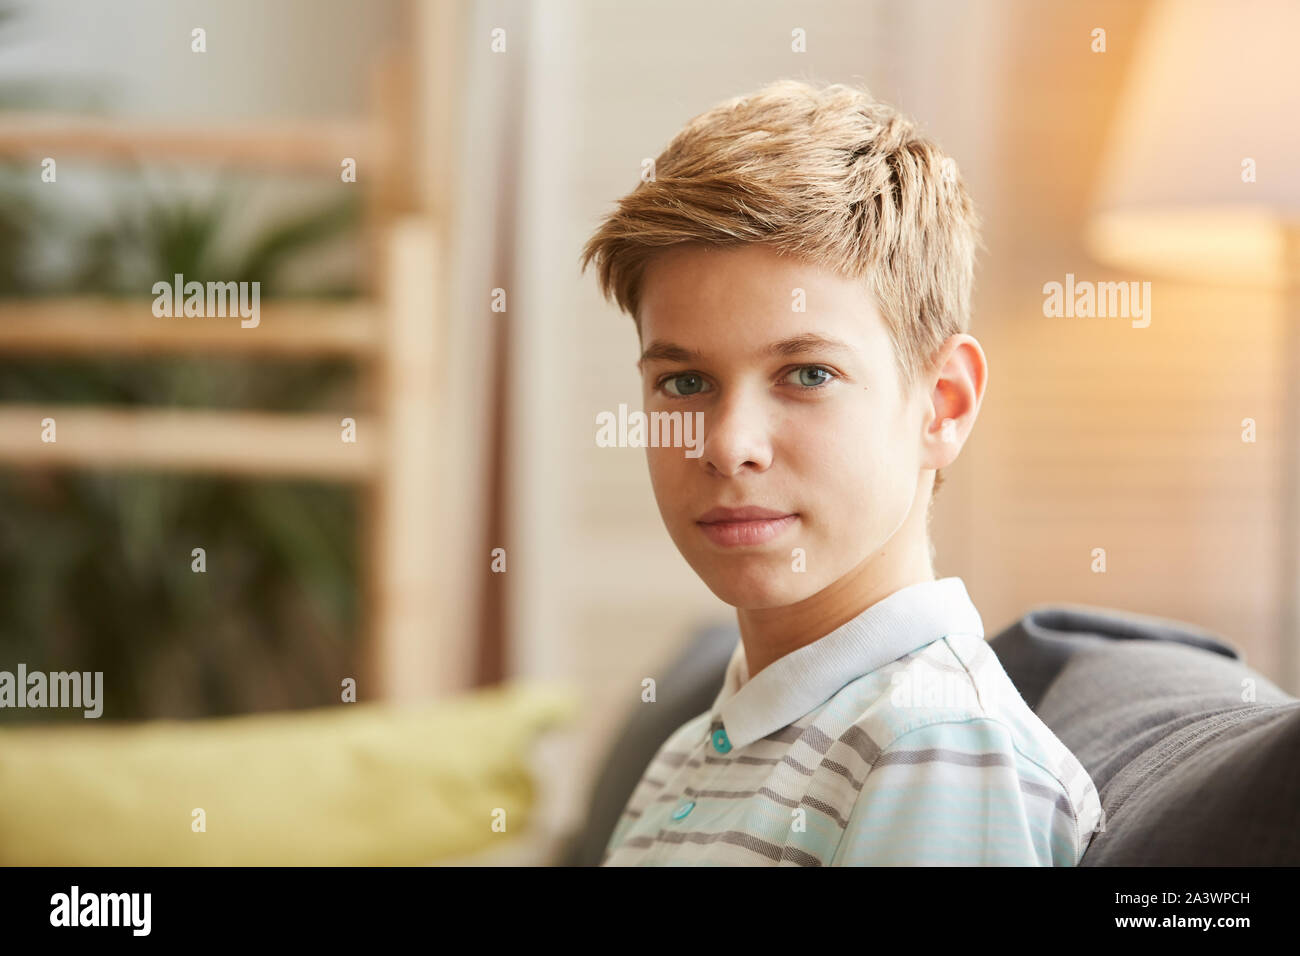 Portrait de jeune garçon aux cheveux blonds looking at camera while sitting on sofa at home Banque D'Images